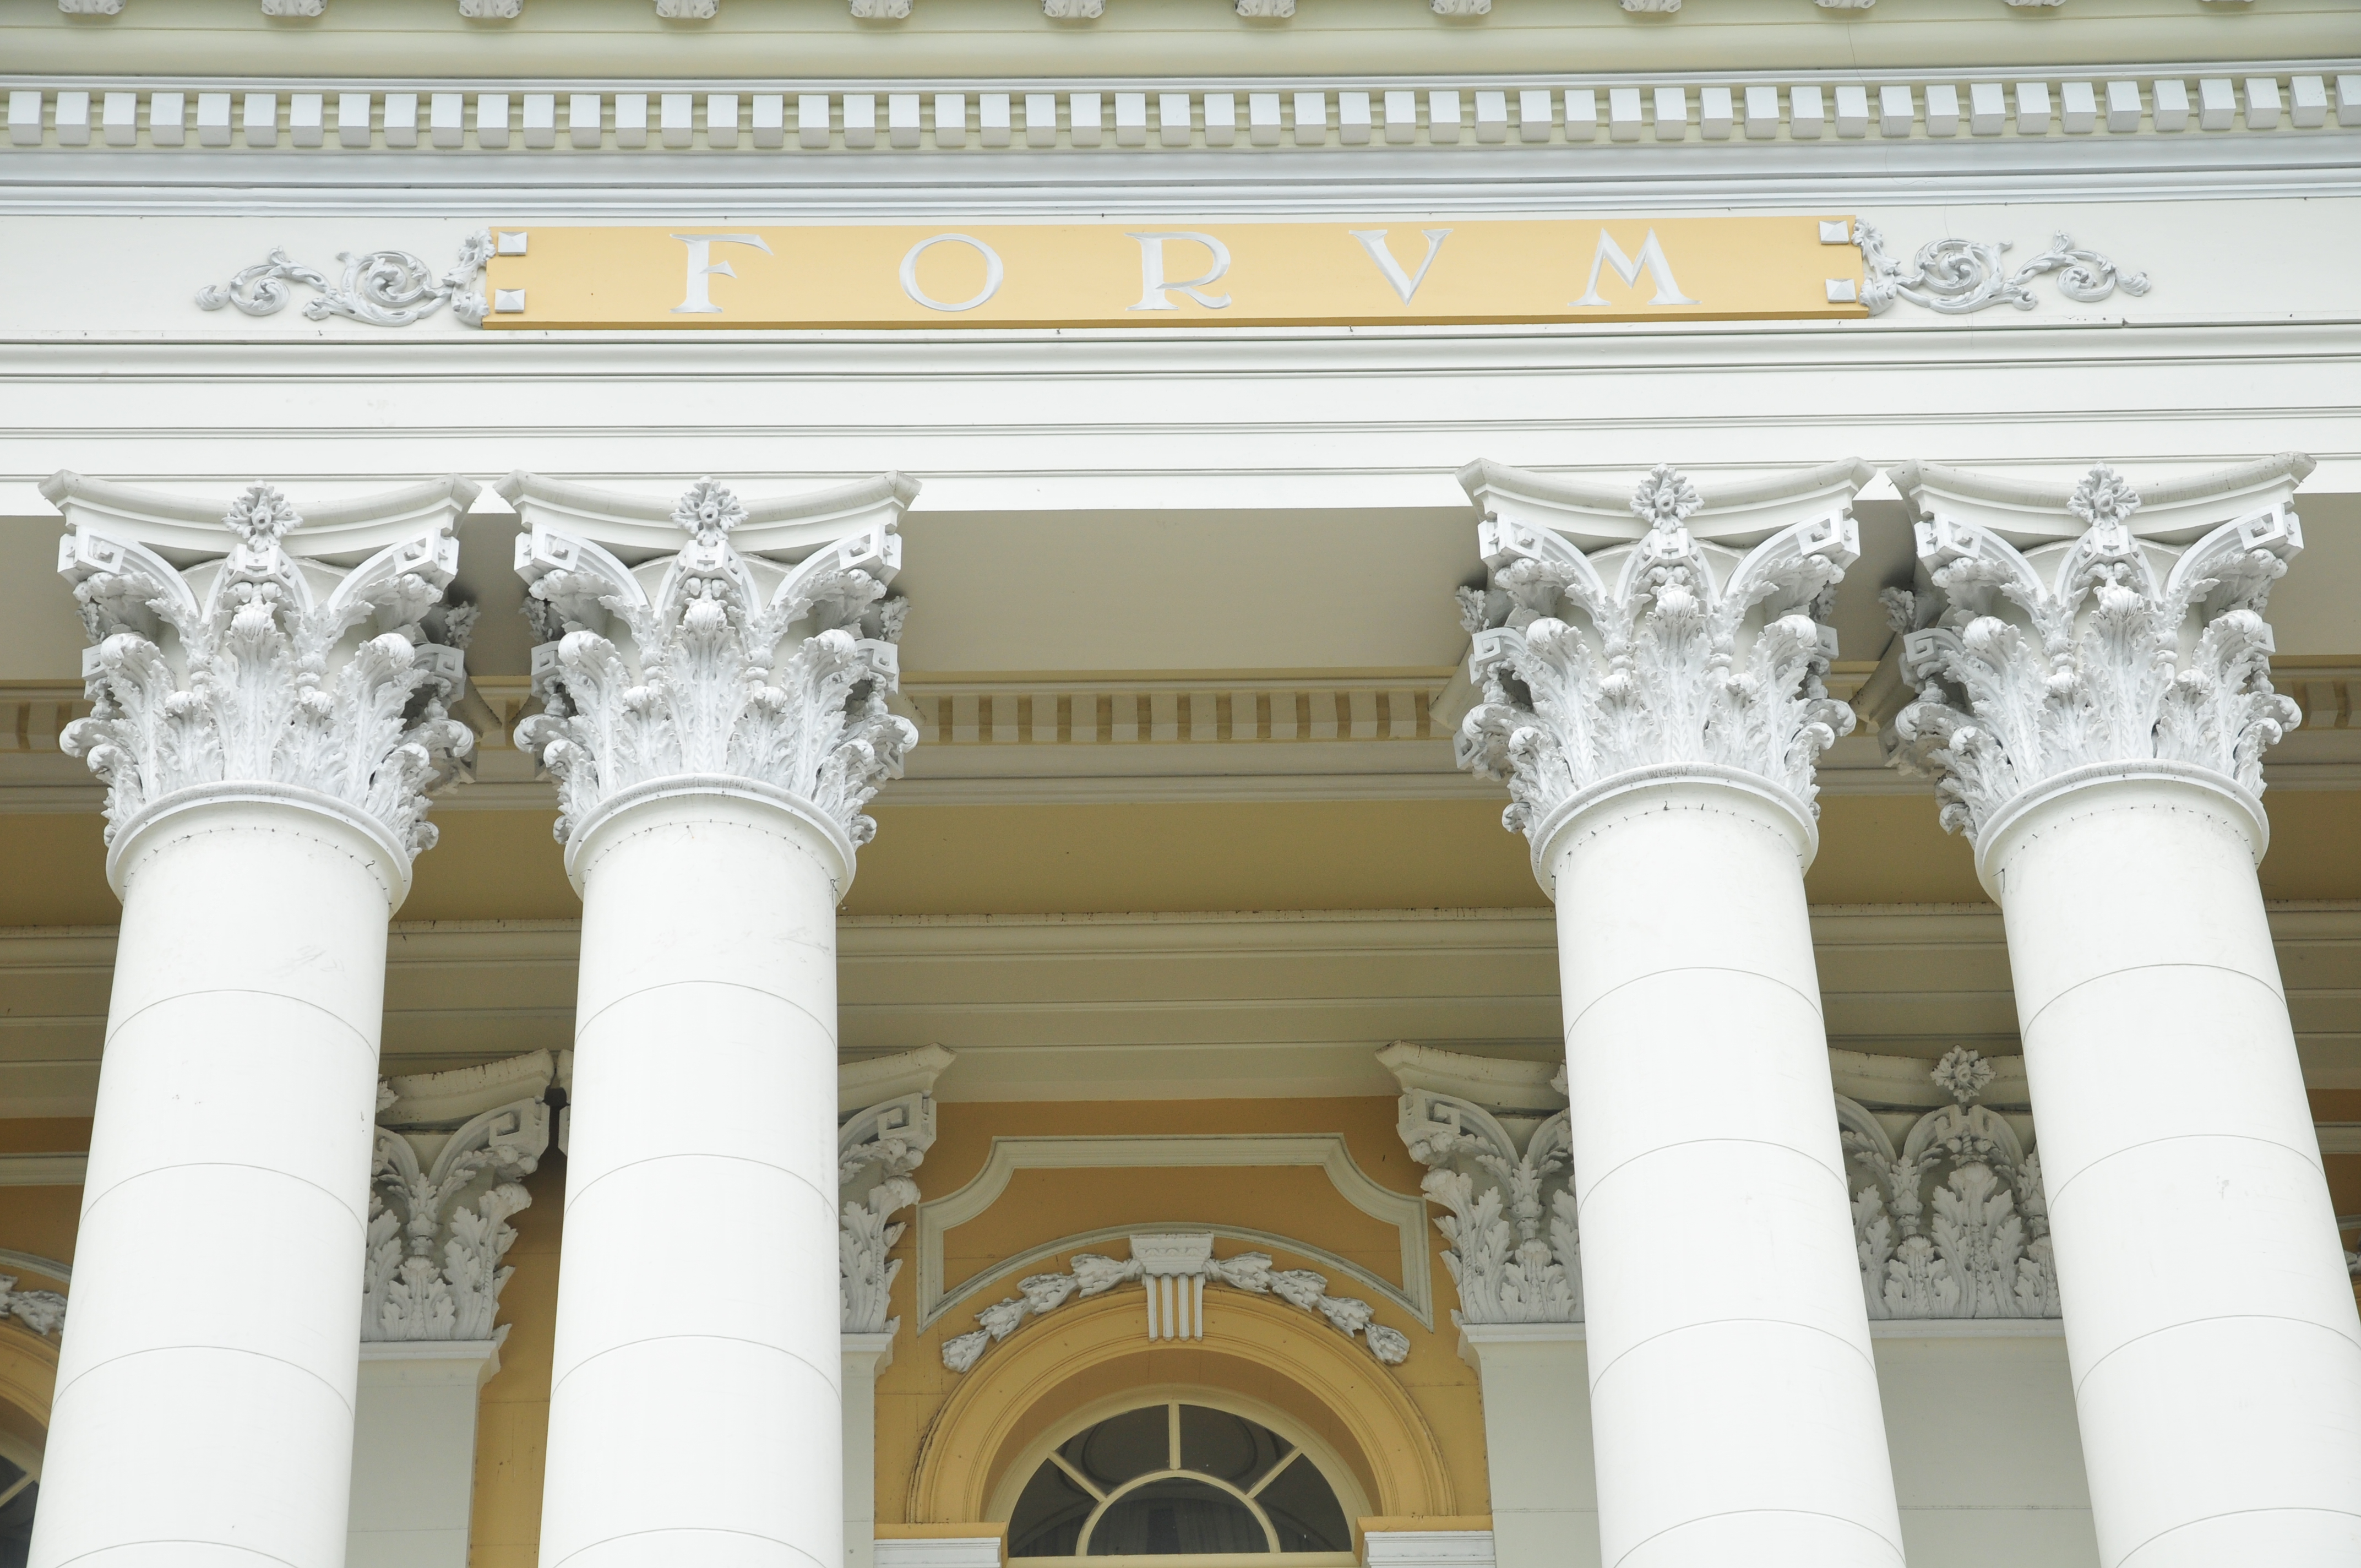 Detalhe da fachada do Palácio da Justiça onde se veem colunas com detalhes em amarelo e branco